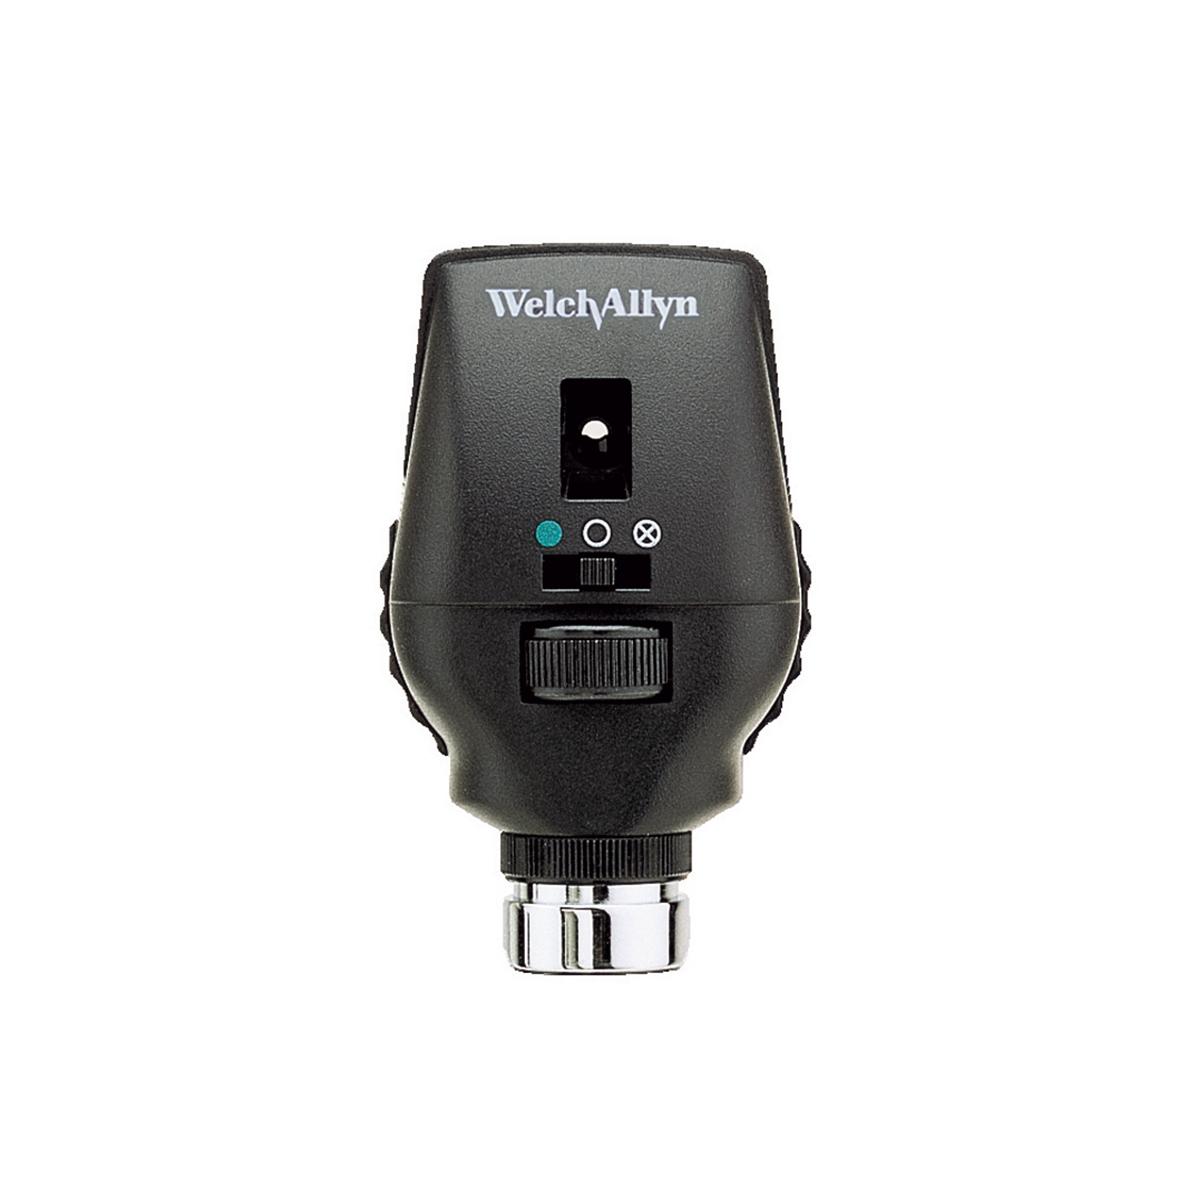 3,5 V AutoStep koaxialt oftalmoskop